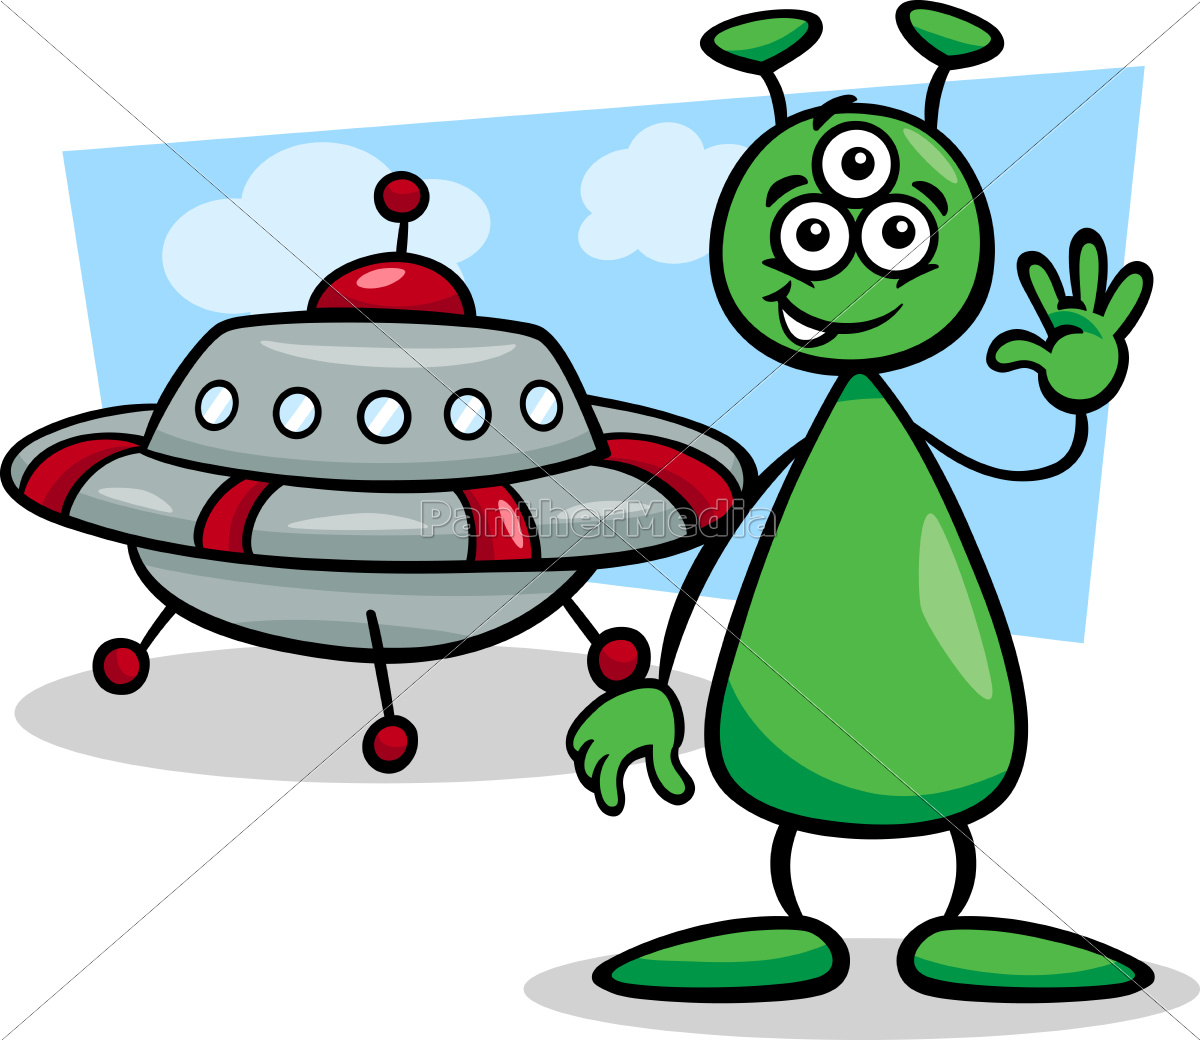 Baixe Personagem de Desenho Animado em Nave Espacial Alienígena